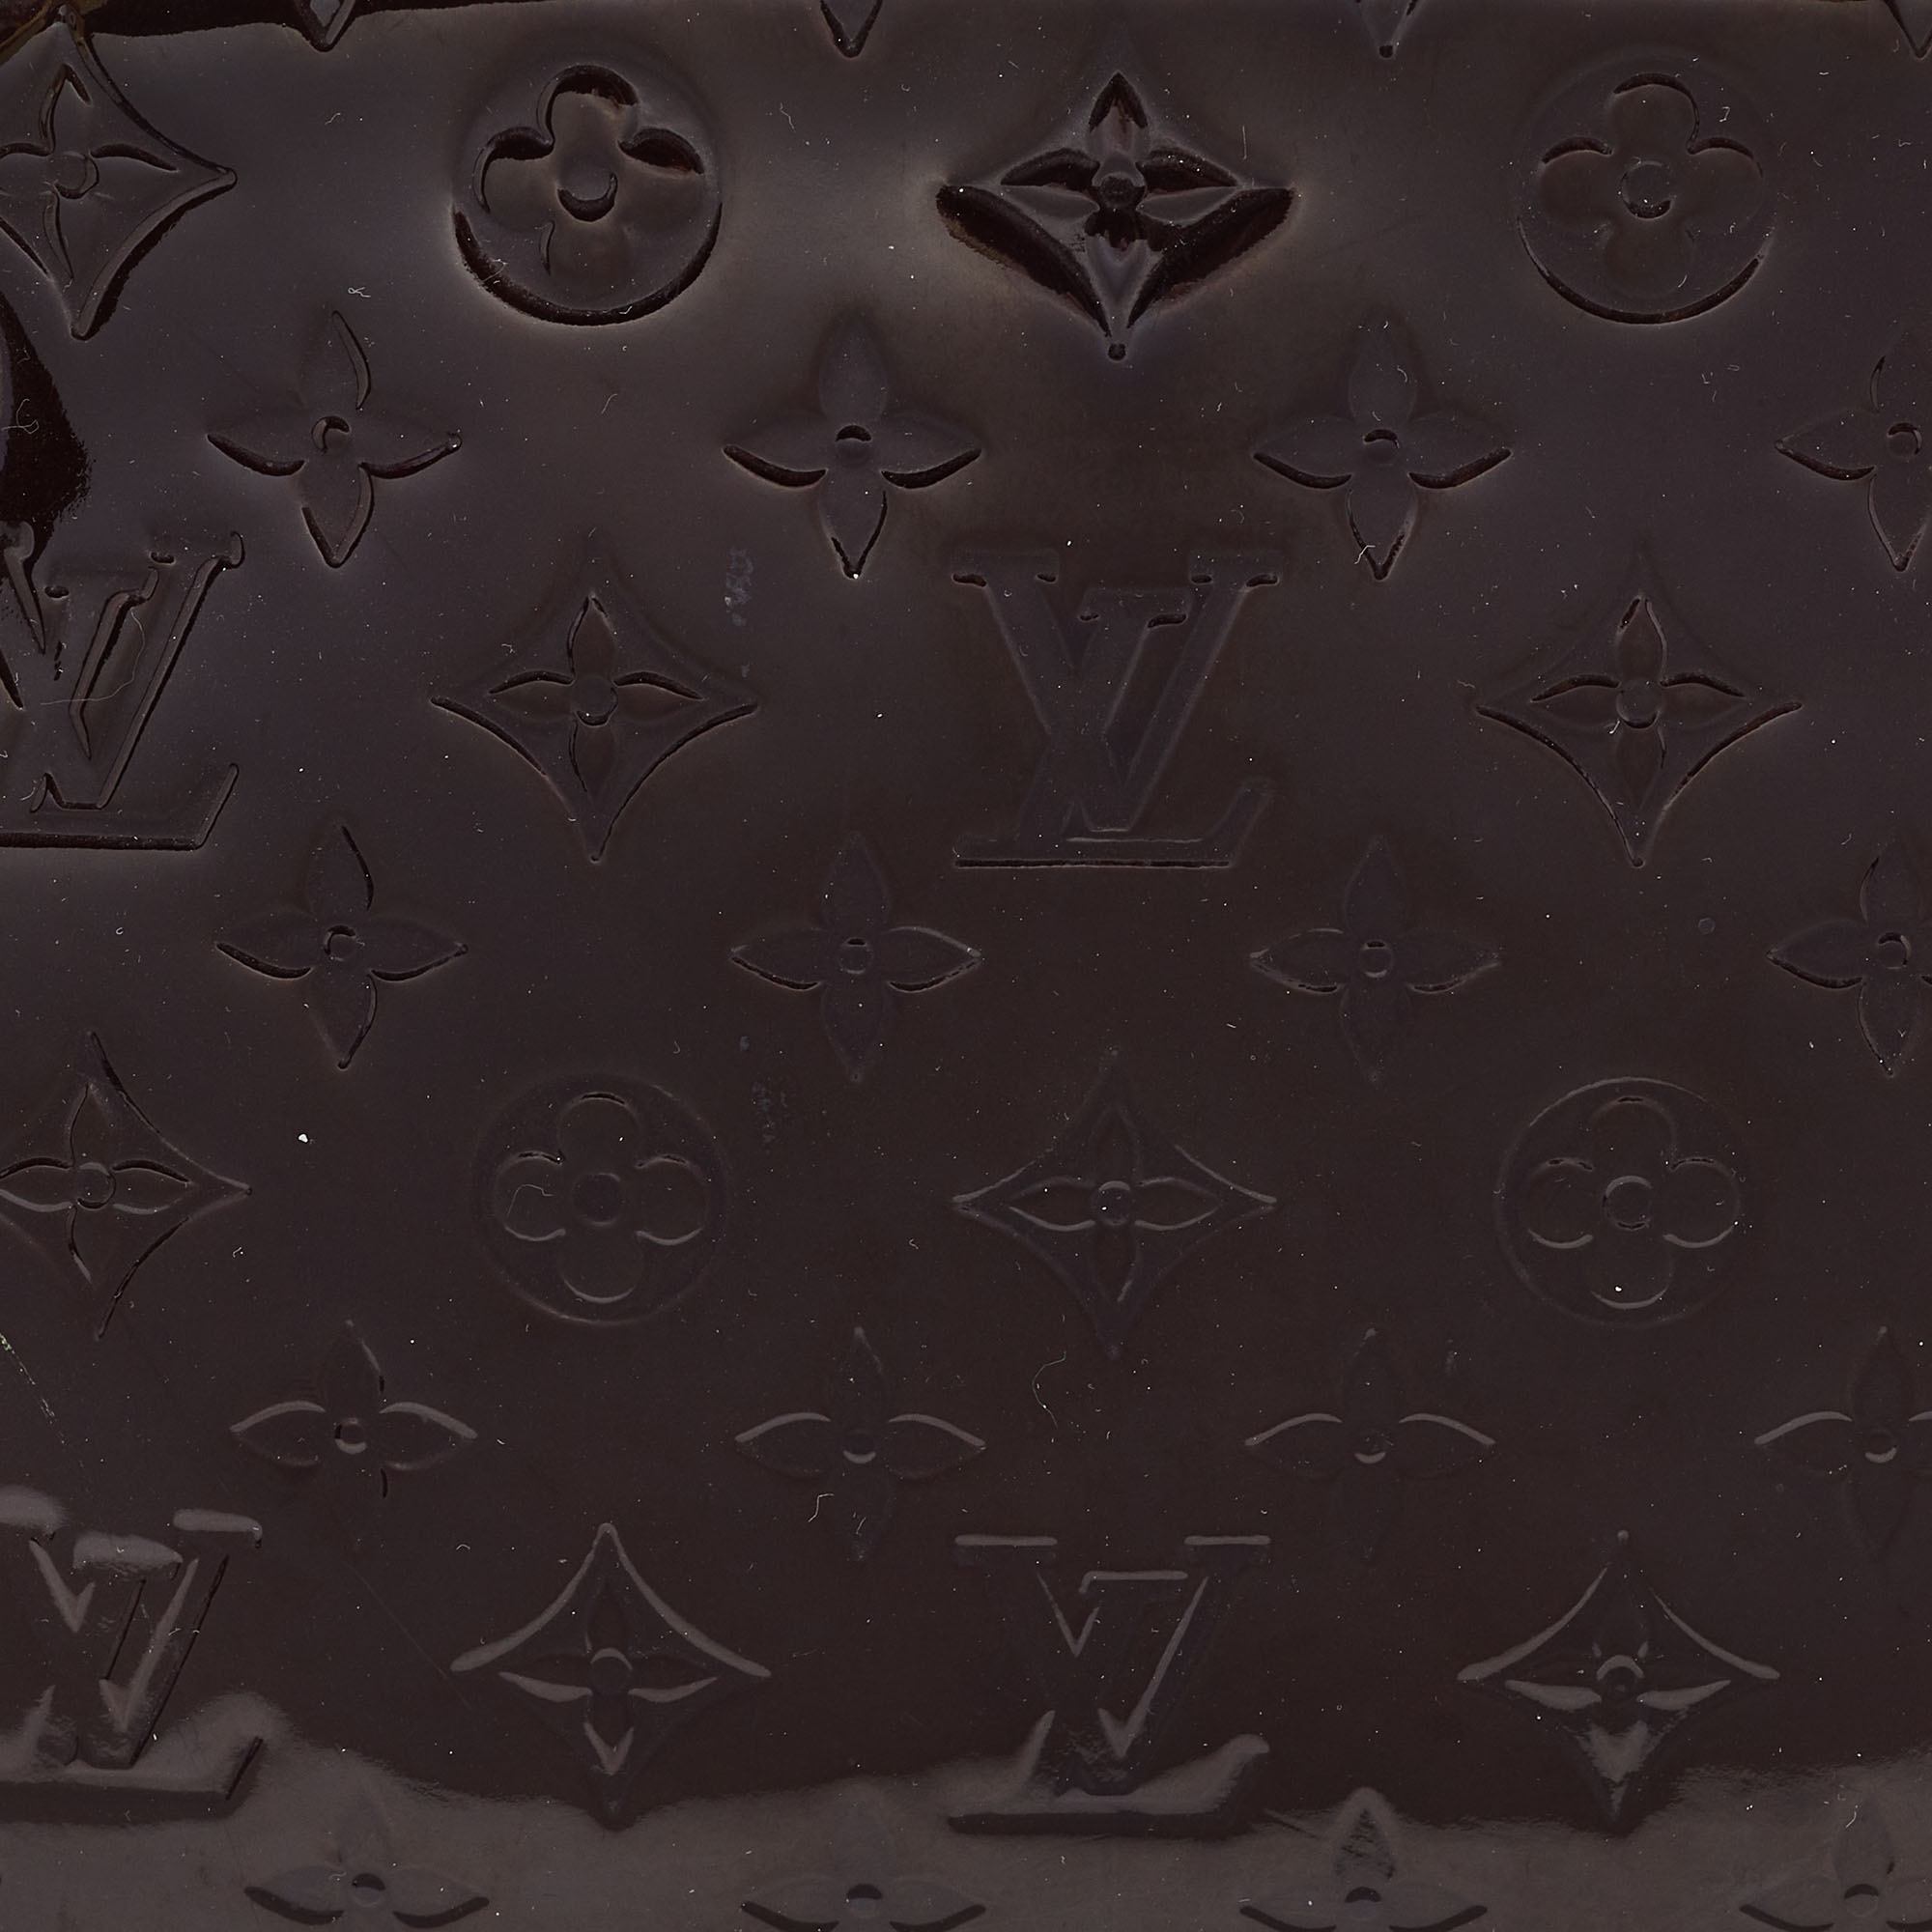 Louis Vuitton Amarante Monogram Vernis Virginia MM Bag